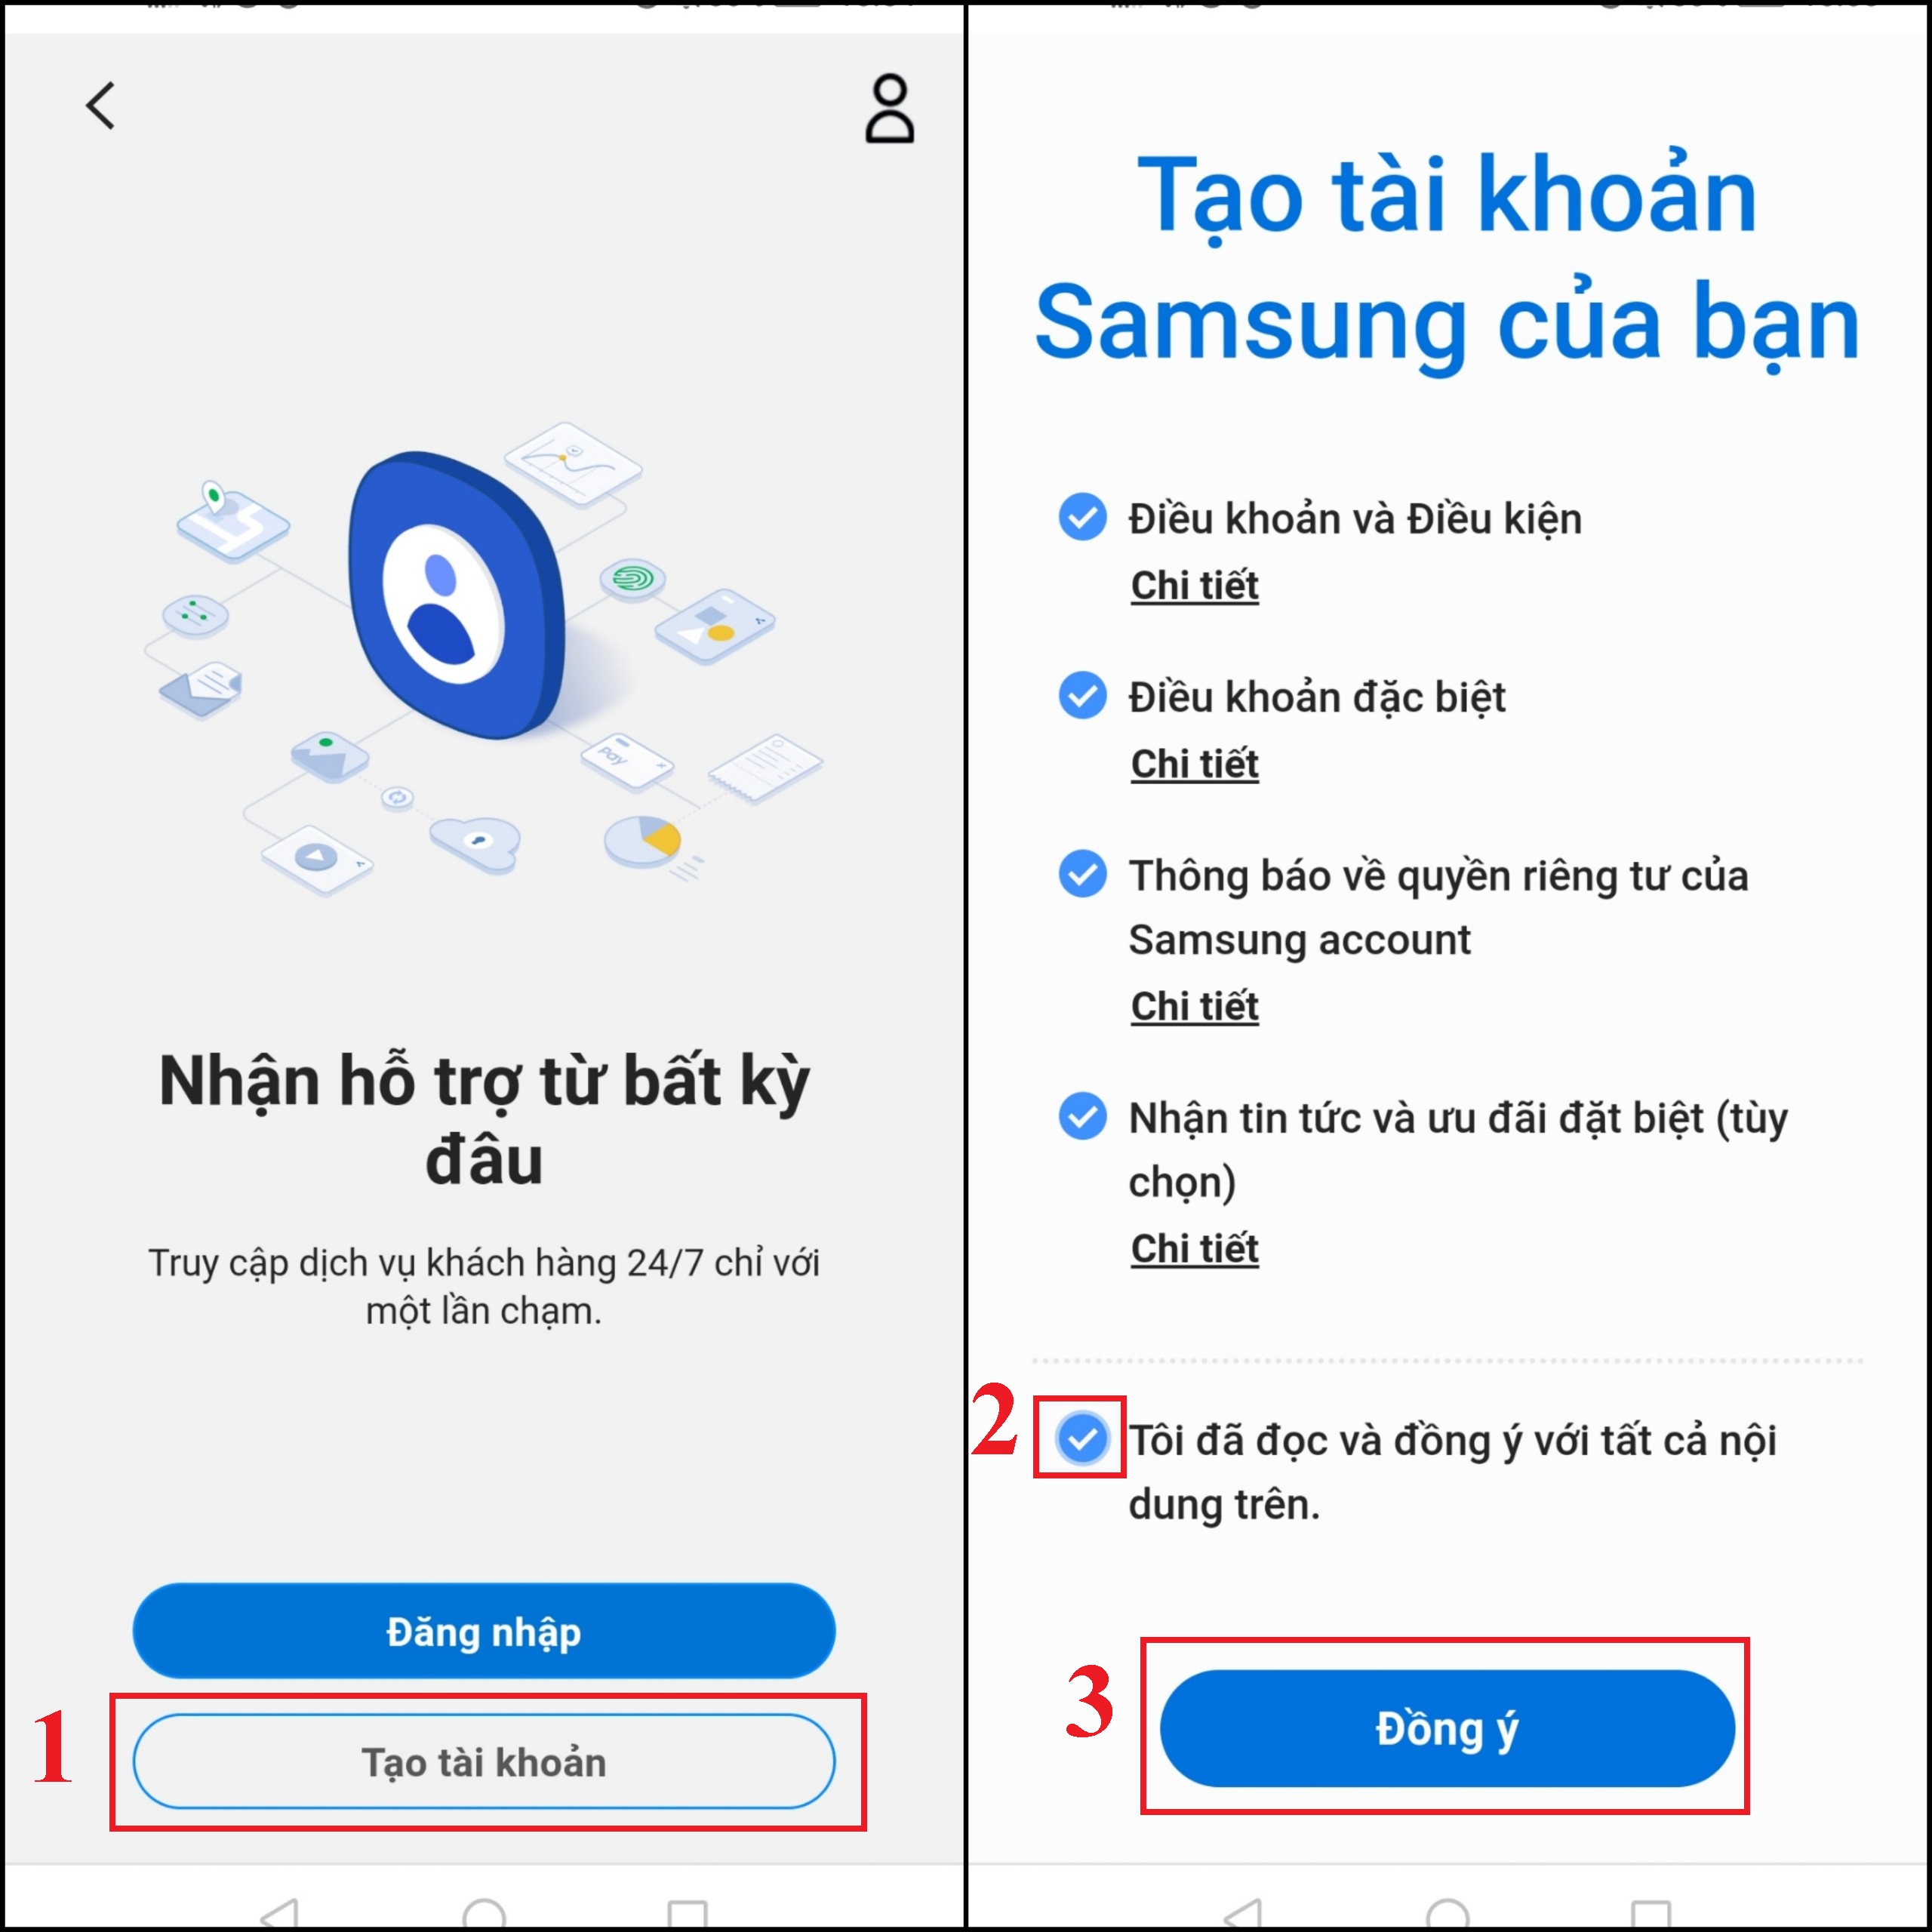 3 cách tạo tài khoản Samsung Account trên Smart tivi Samsung chi tiết > Bạn truy cập trang web Samsung Tại đây và chọn Tạo tài khoản. Sau đó, bạn đọc và đồng ý các Điều khoản, chính sách bảo mật của Samsung > Chọn Đồng ý.